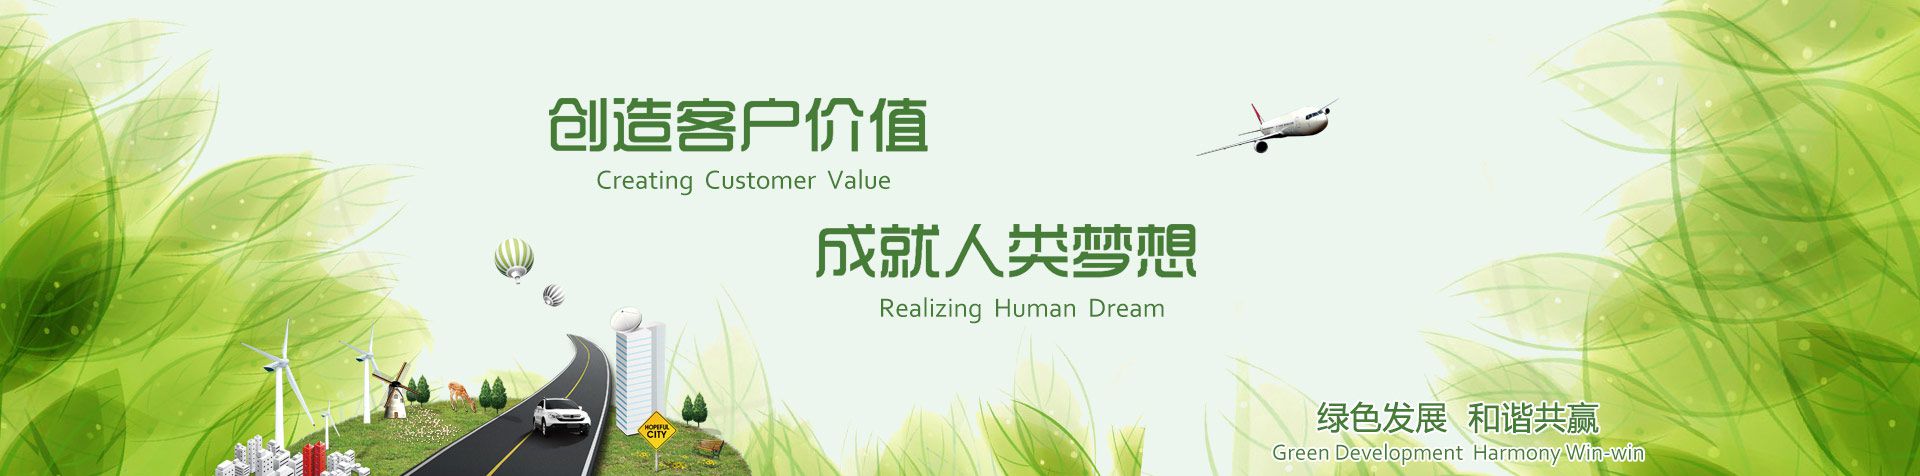 创造客户价值成就人类梦想